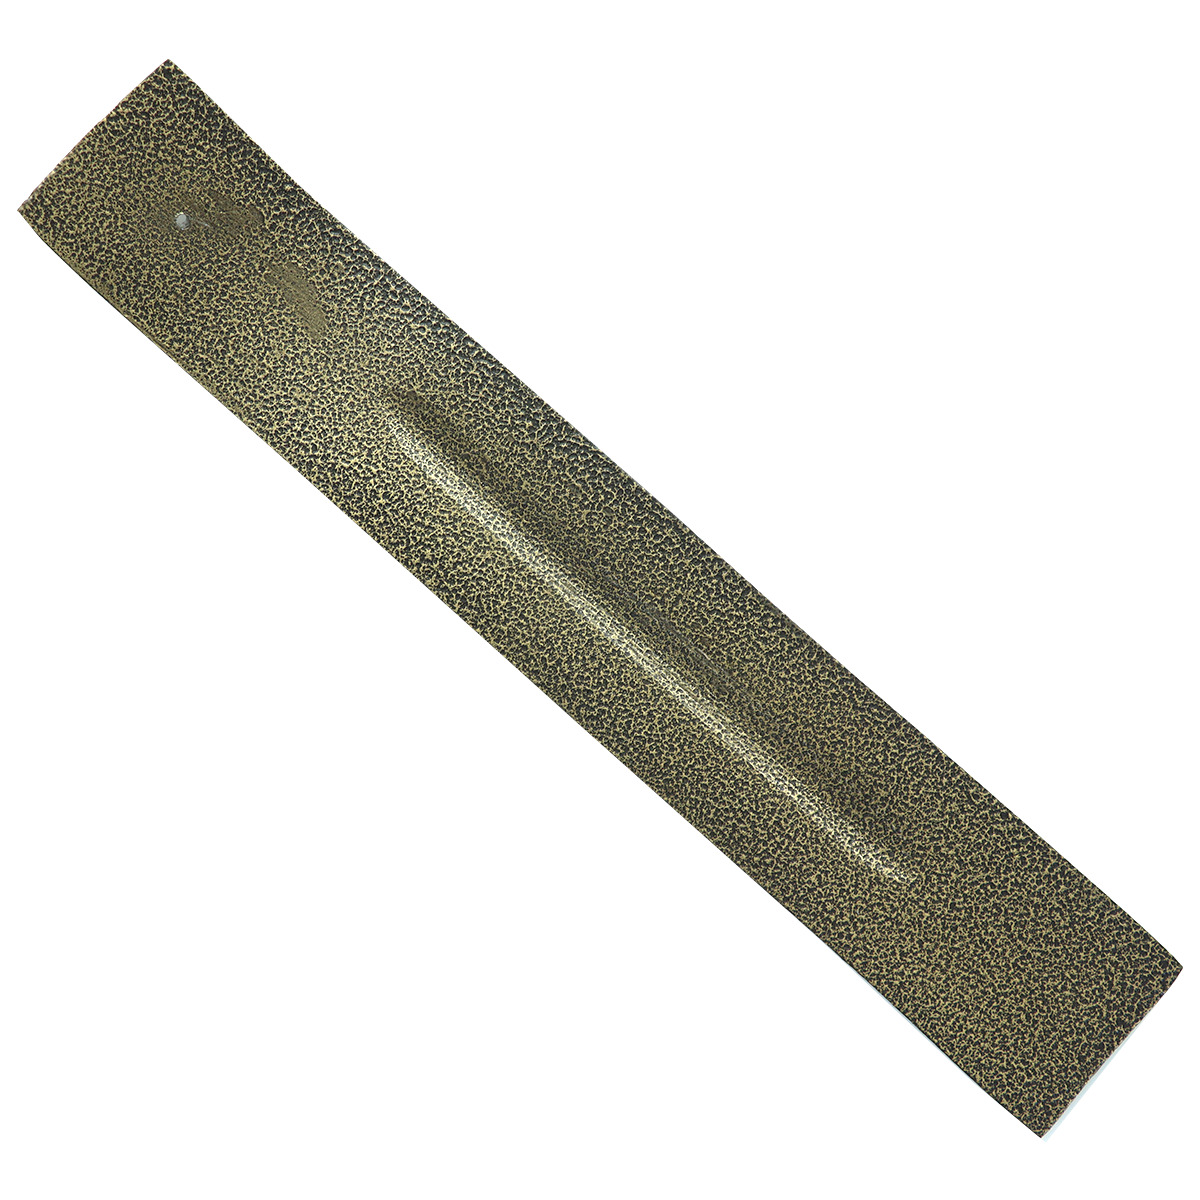 Brûle encens pour bâtonnets en aluminium couleur bronze marbré, L. 26 cm. BOITE DE 4